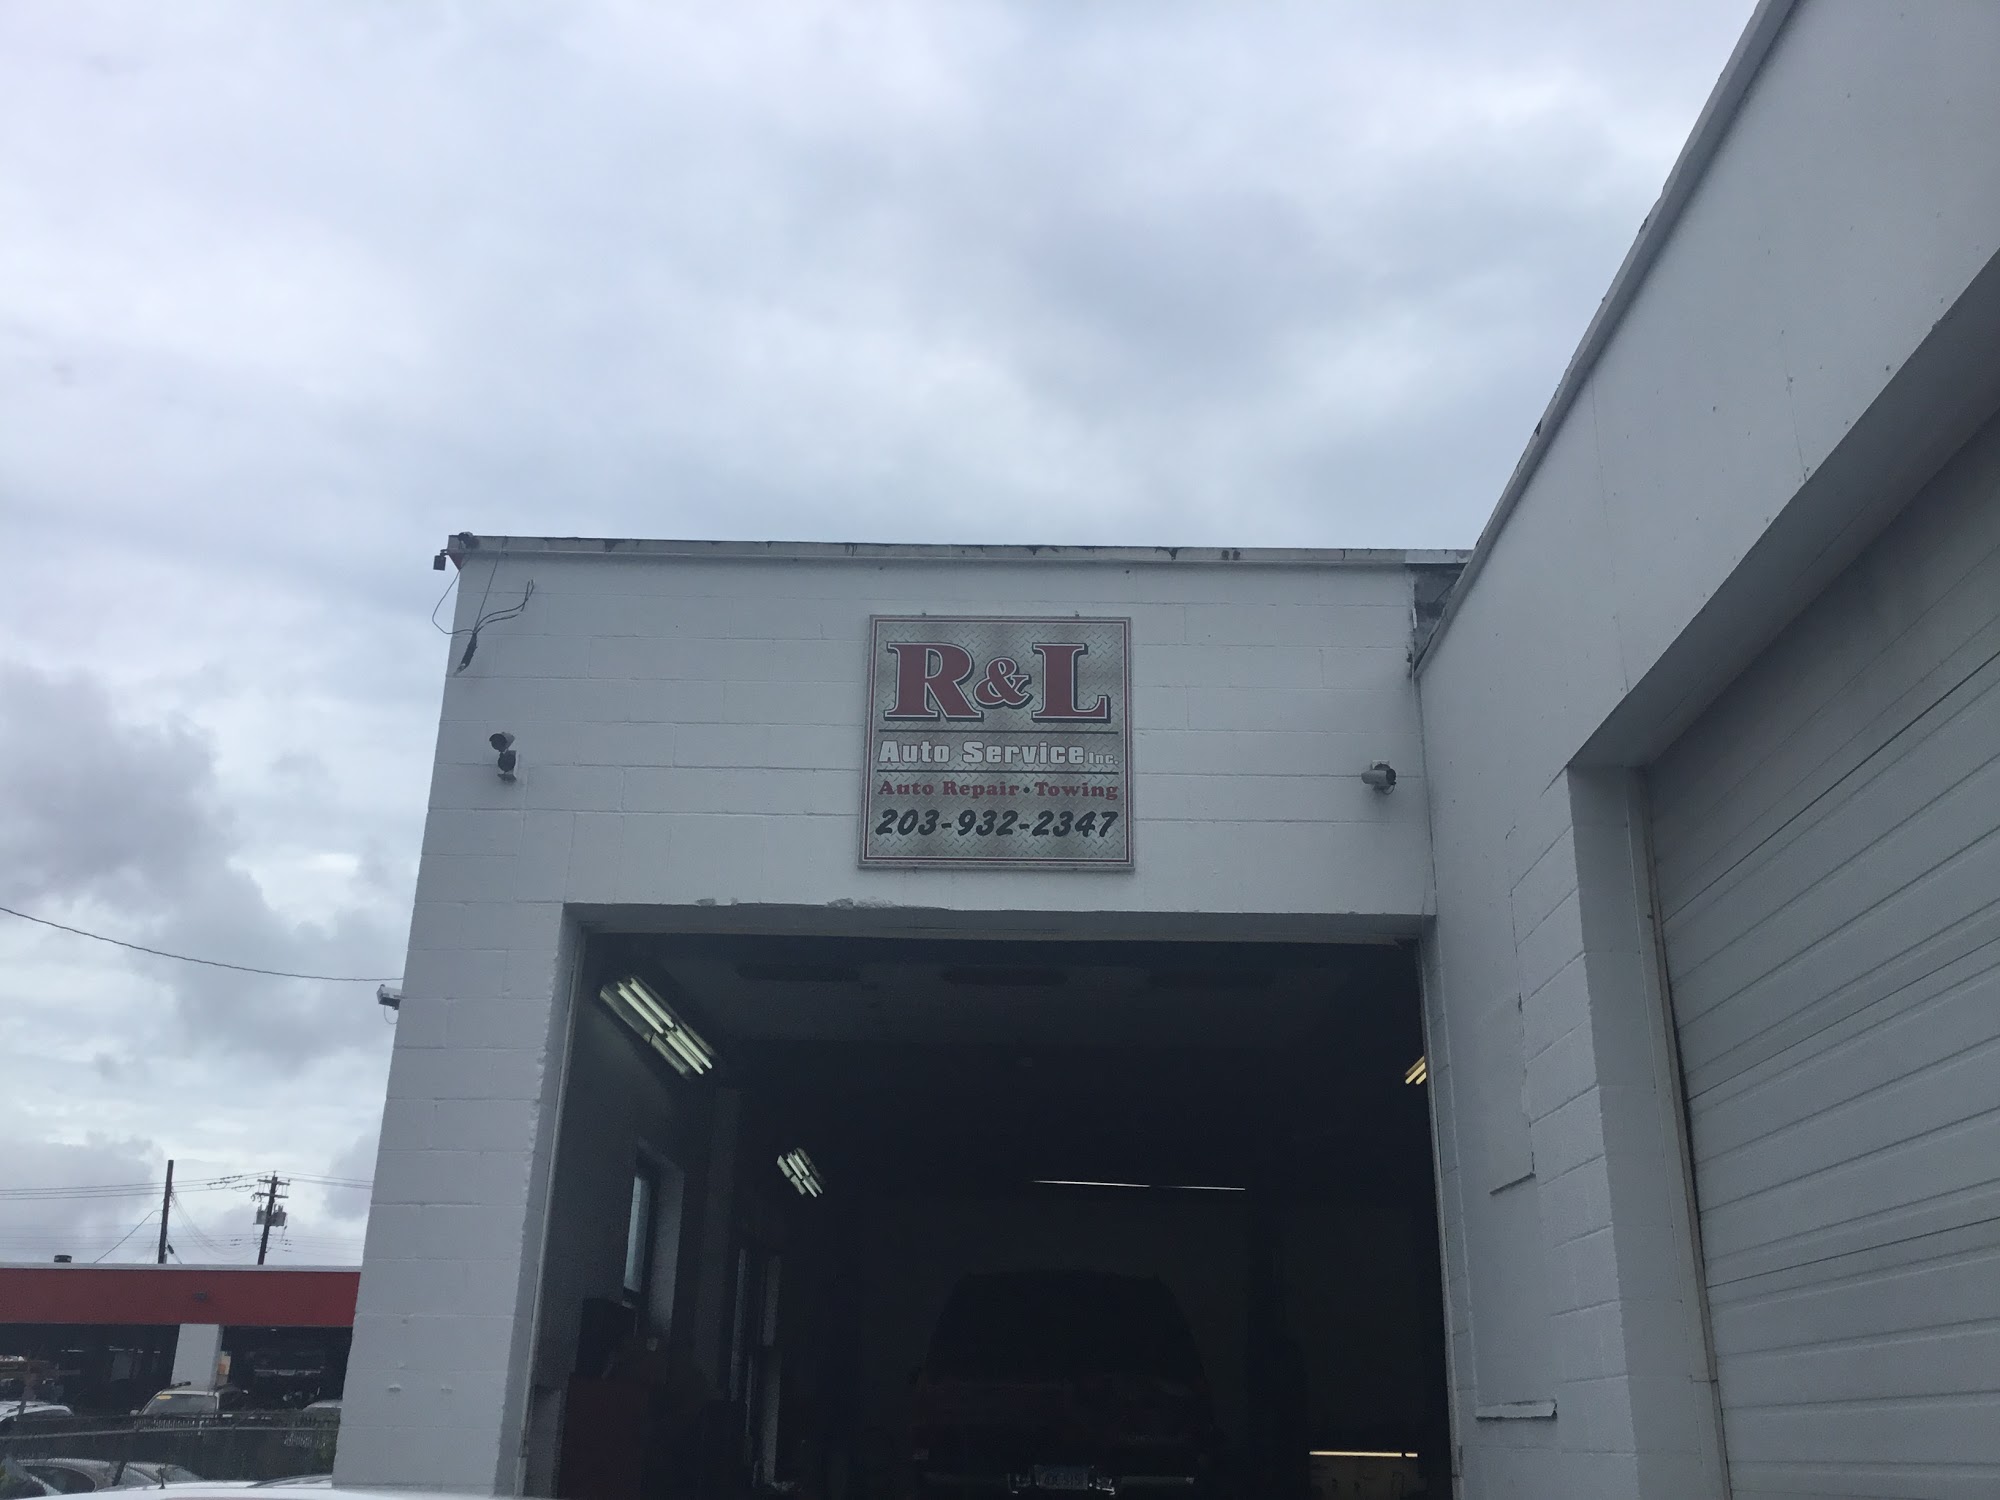 R&l Auto Service Inc